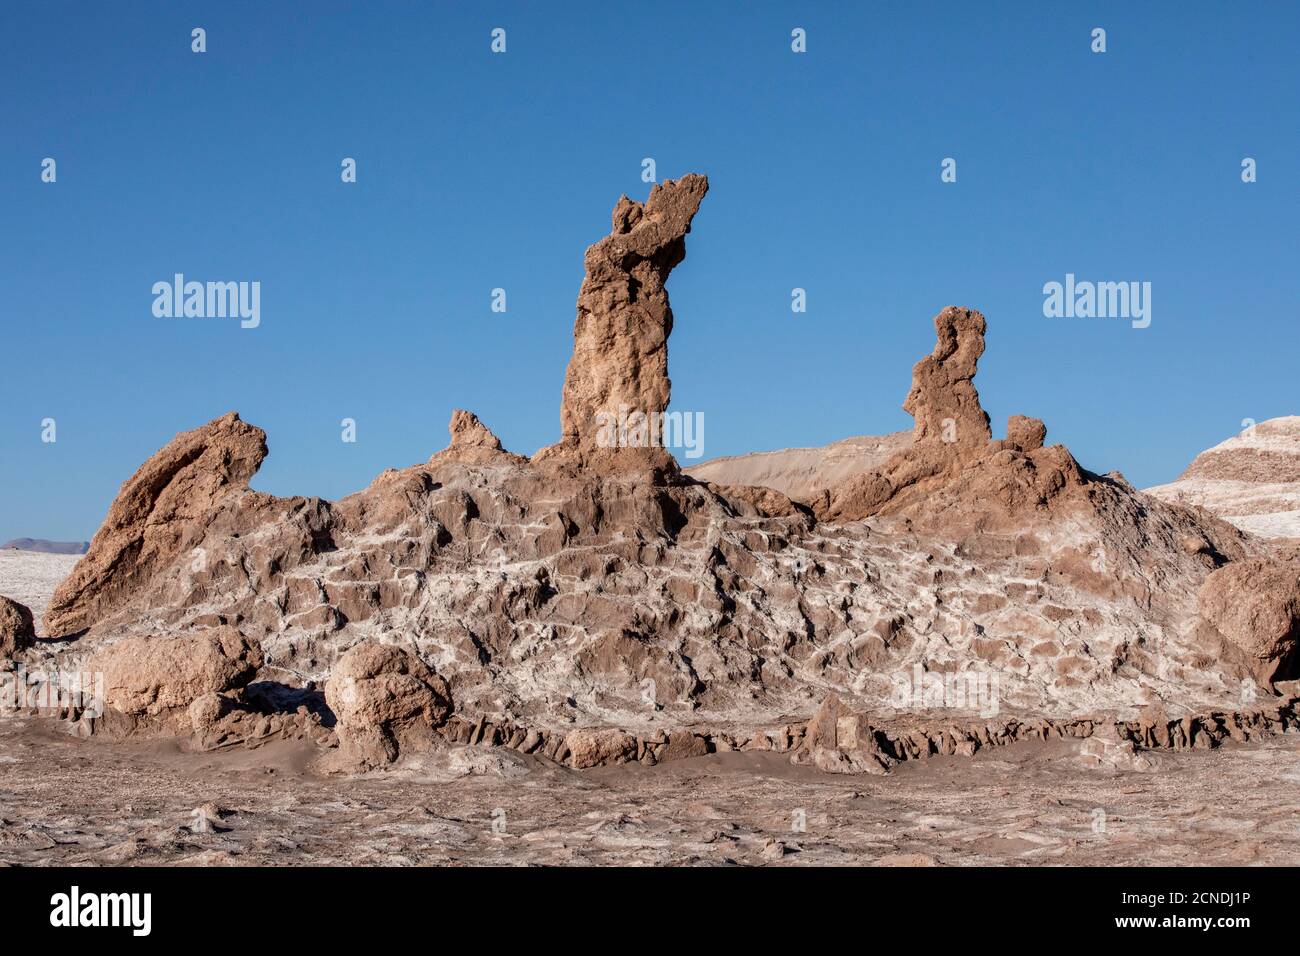 La formation de pierres Tres Marias, Valle de le Luna, Réserve nationale de Los Flamencos, région d'Antofagasta, Chili Banque D'Images